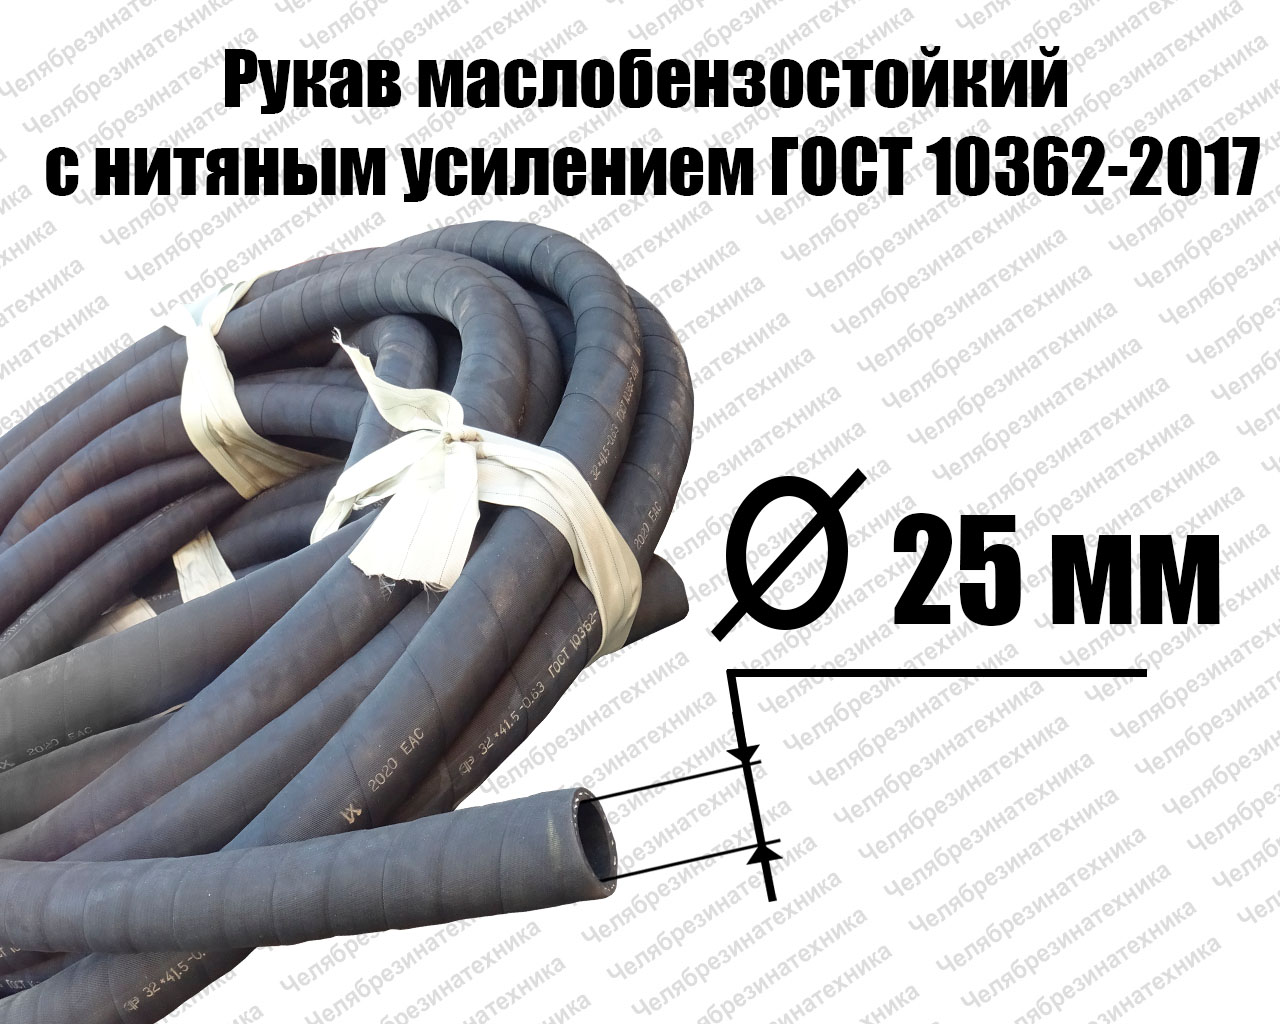 Рукав   25х35-1,6   ГОСТ 10362-2017 маслобензостойкий Саранск